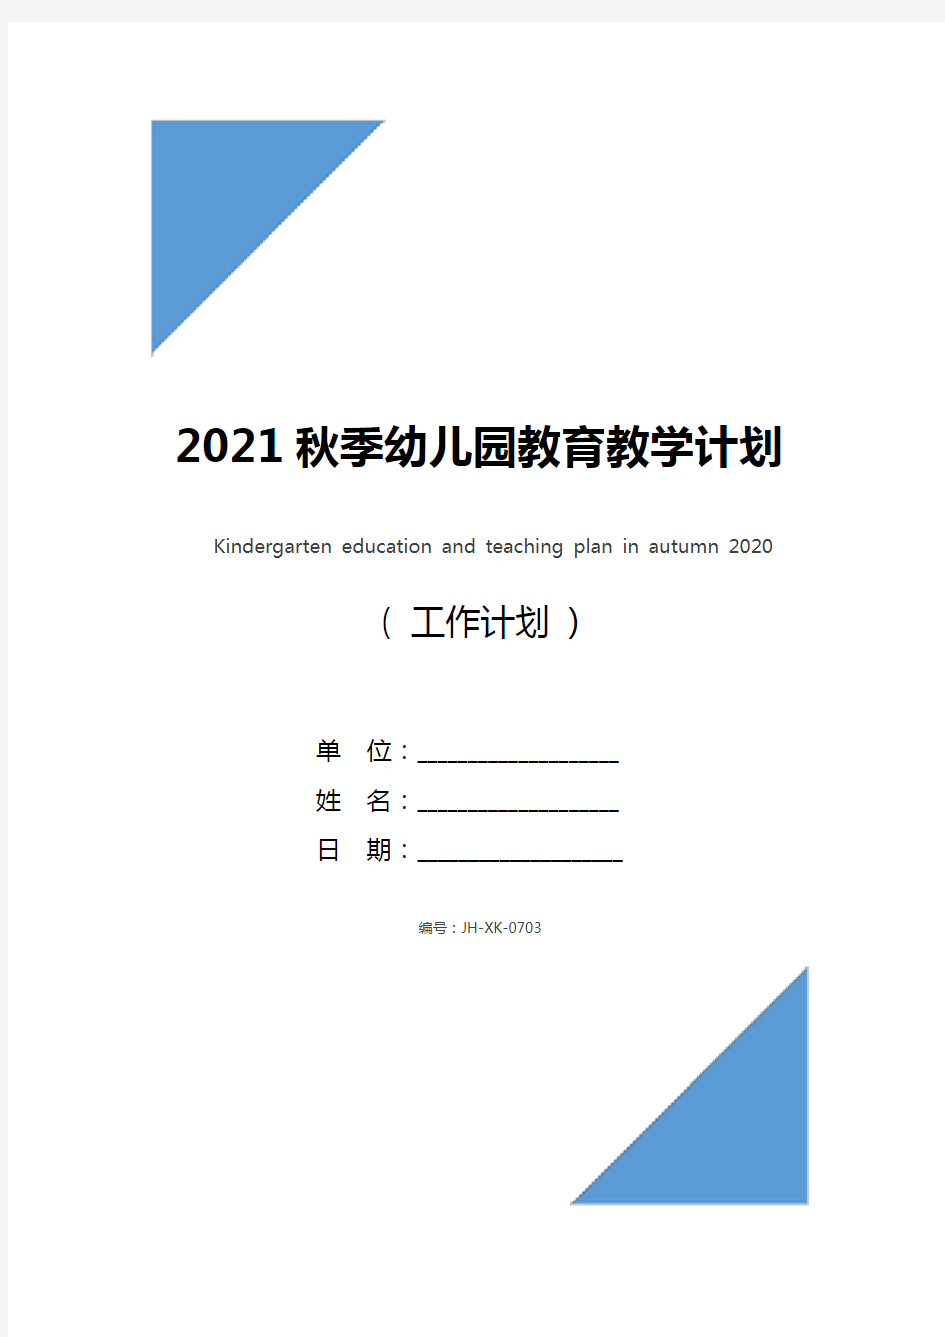 2021秋季幼儿园教育教学计划(标准版)